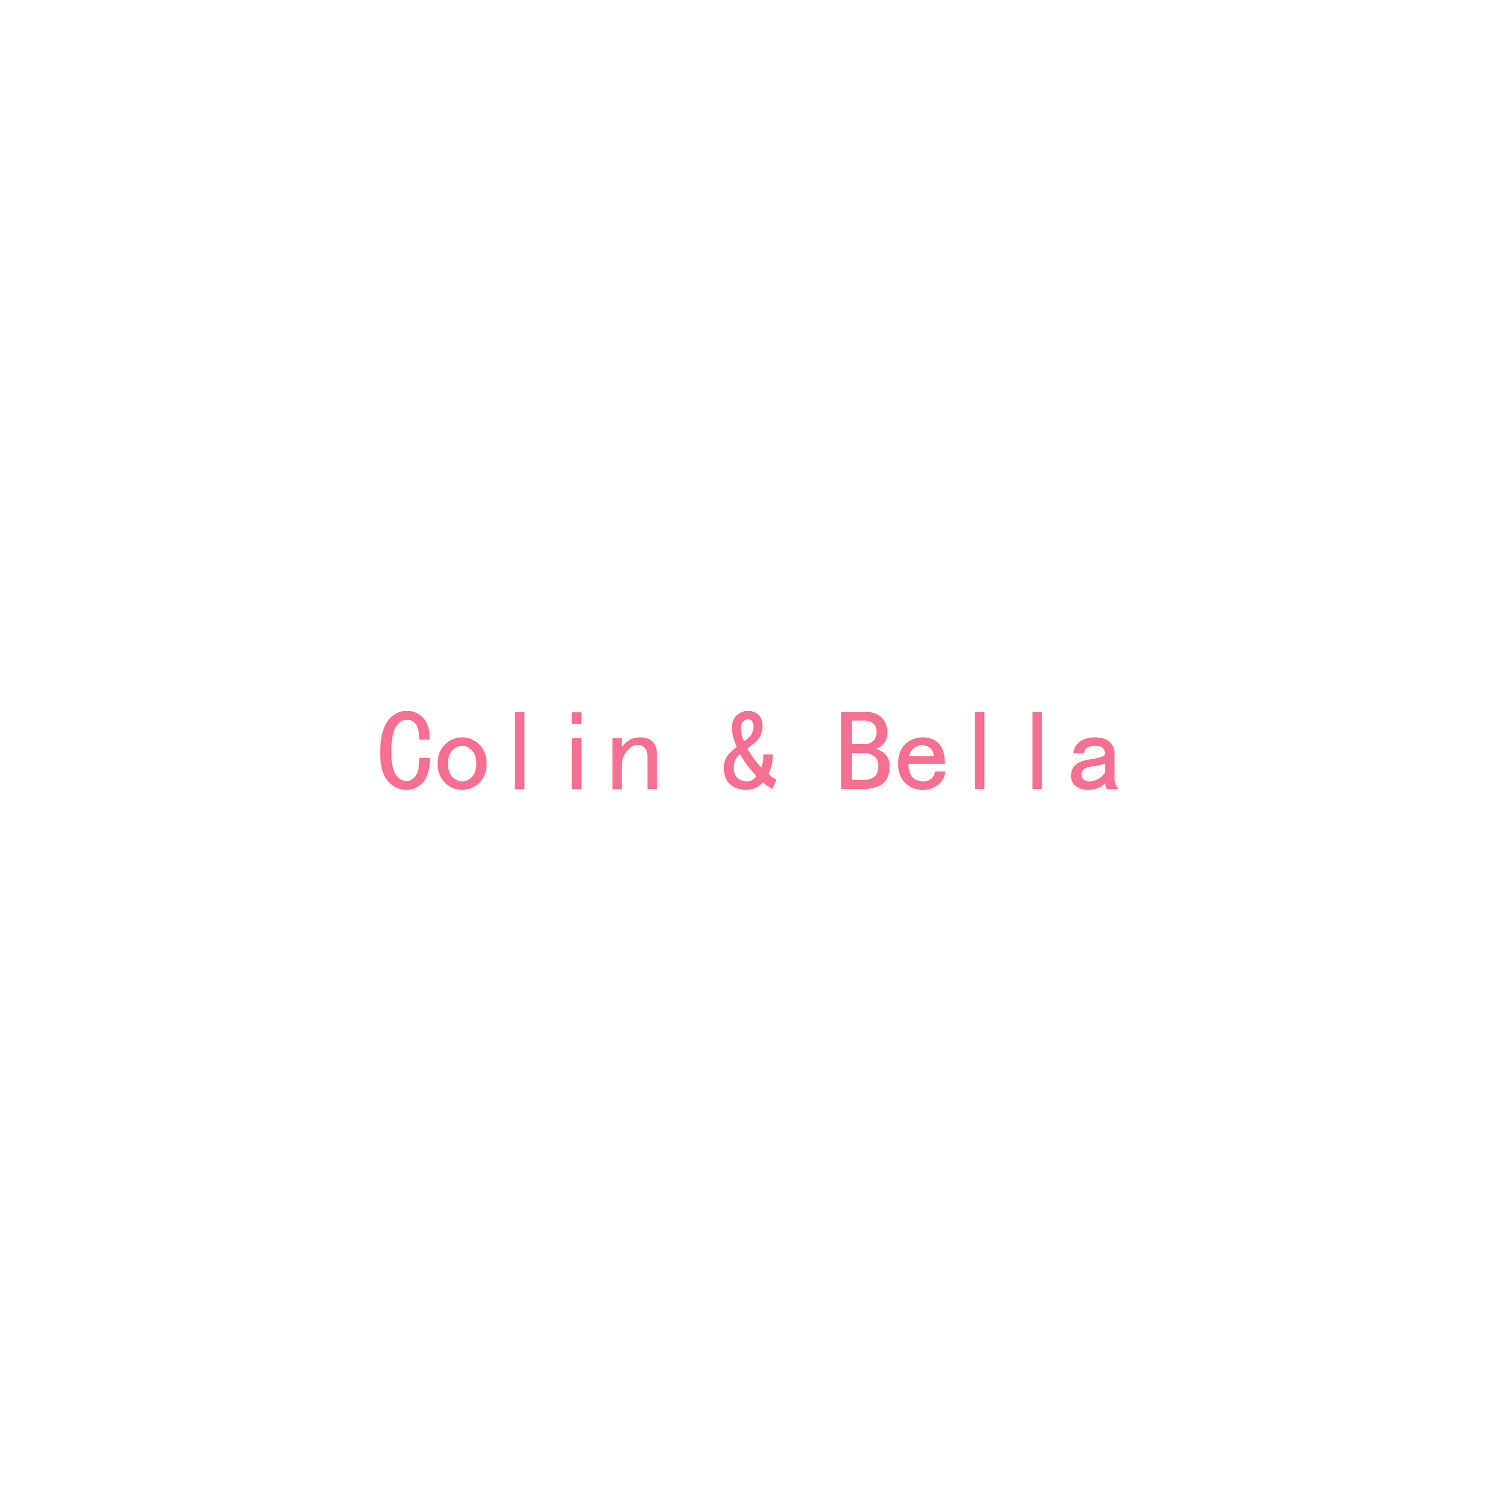 COLIN & BELLA